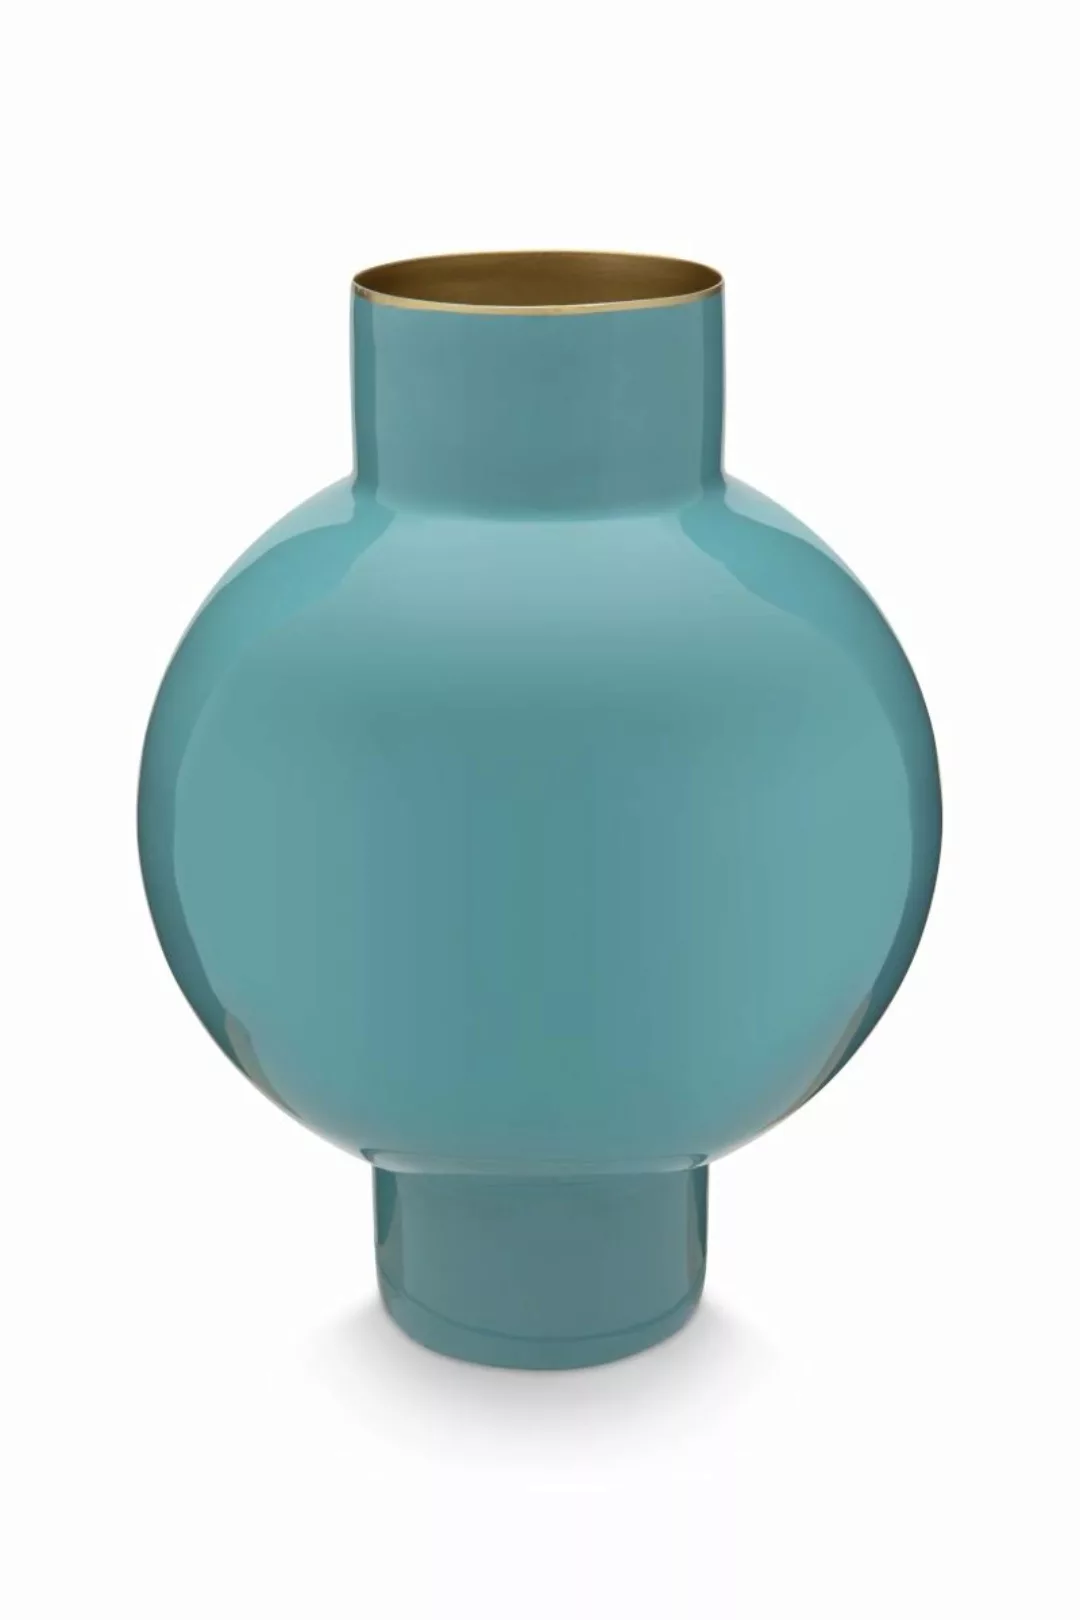 PIP STUDIO Vasen Vase Metal klein sea green 18 x 24 cm (blau) günstig online kaufen